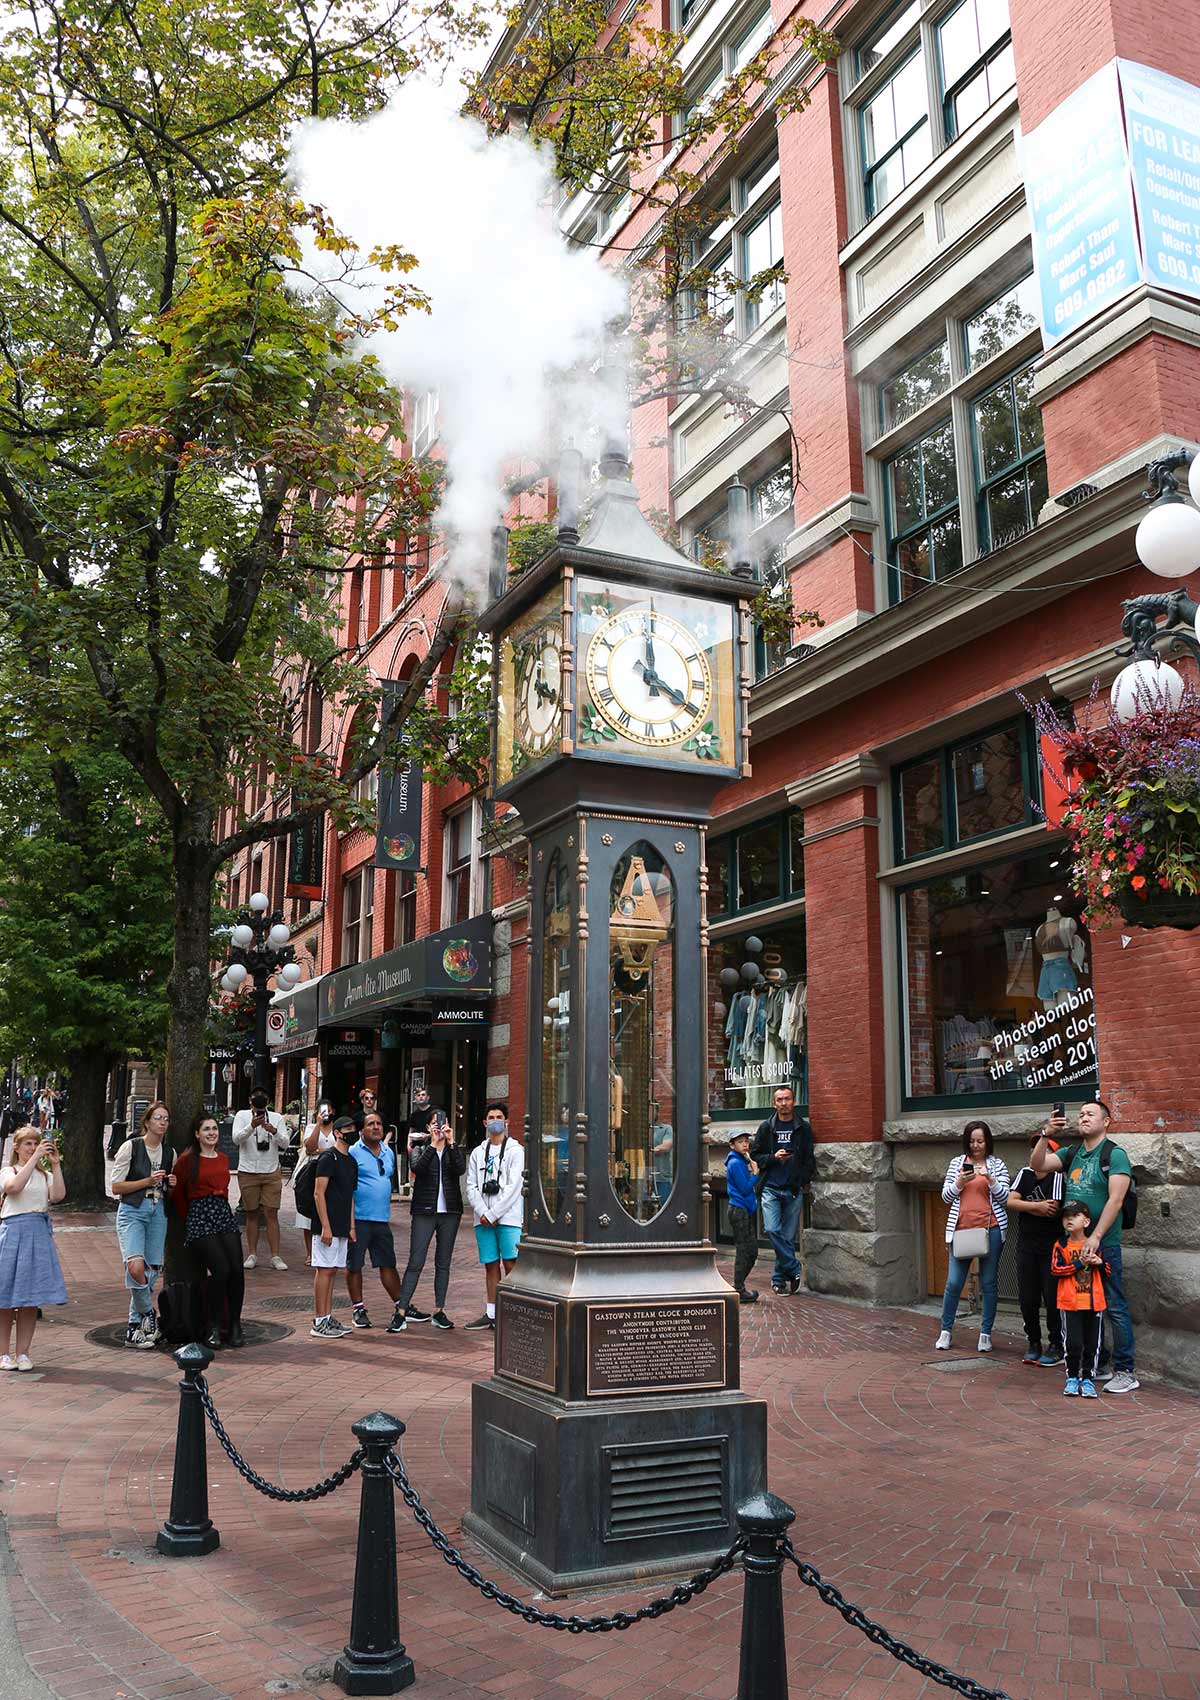 Horloge à vapeur, Gastown, Vancouver, Colombie-Britannique, Canada / Steam Clock, Flatiron, Gastown, Vancouver, BC, Canada